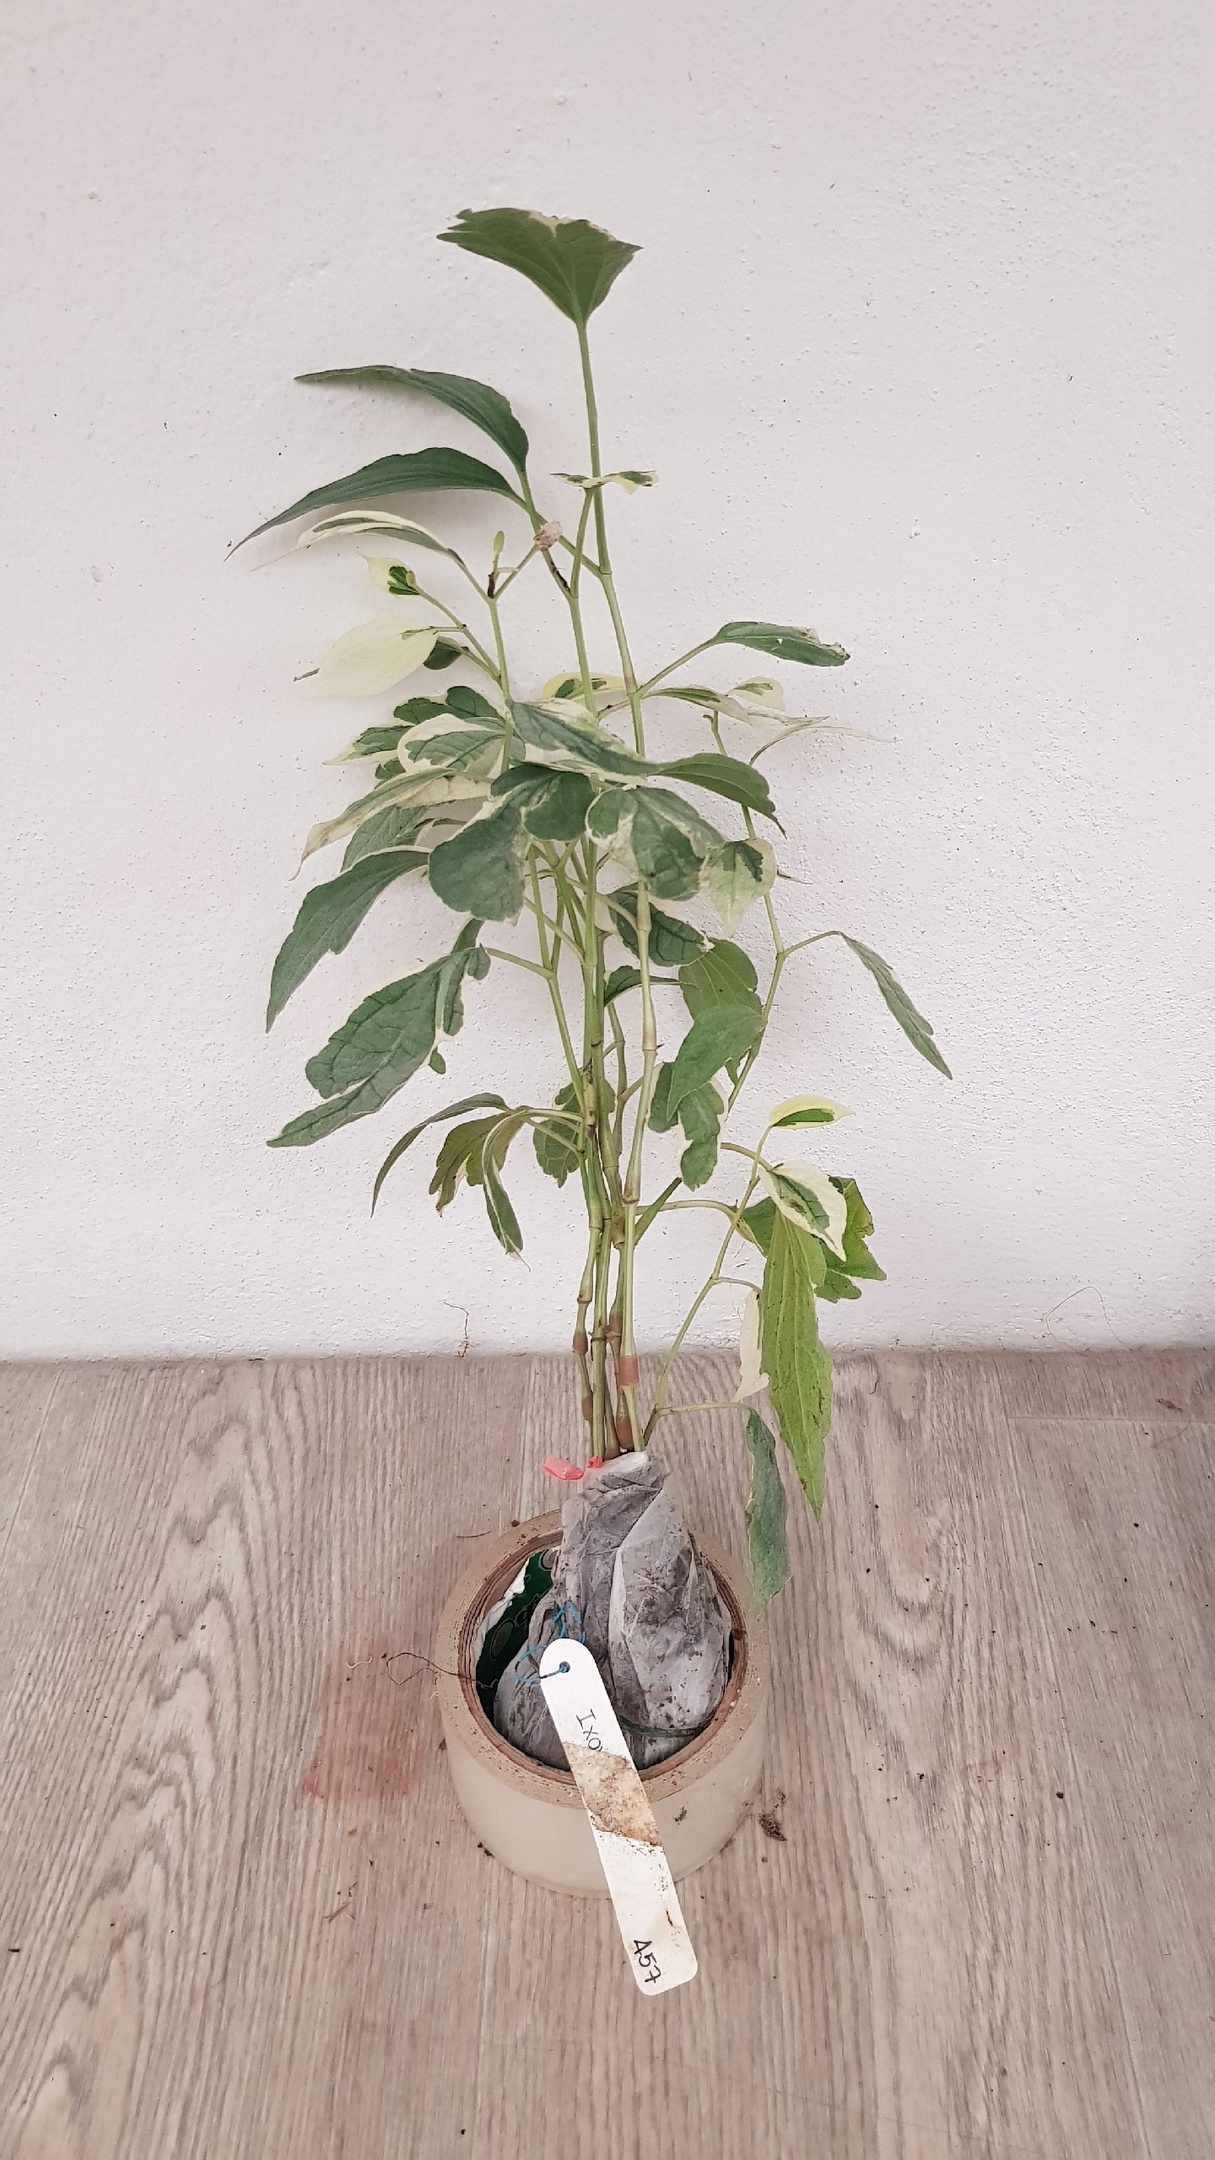 Piper sarmentosum albomarginata